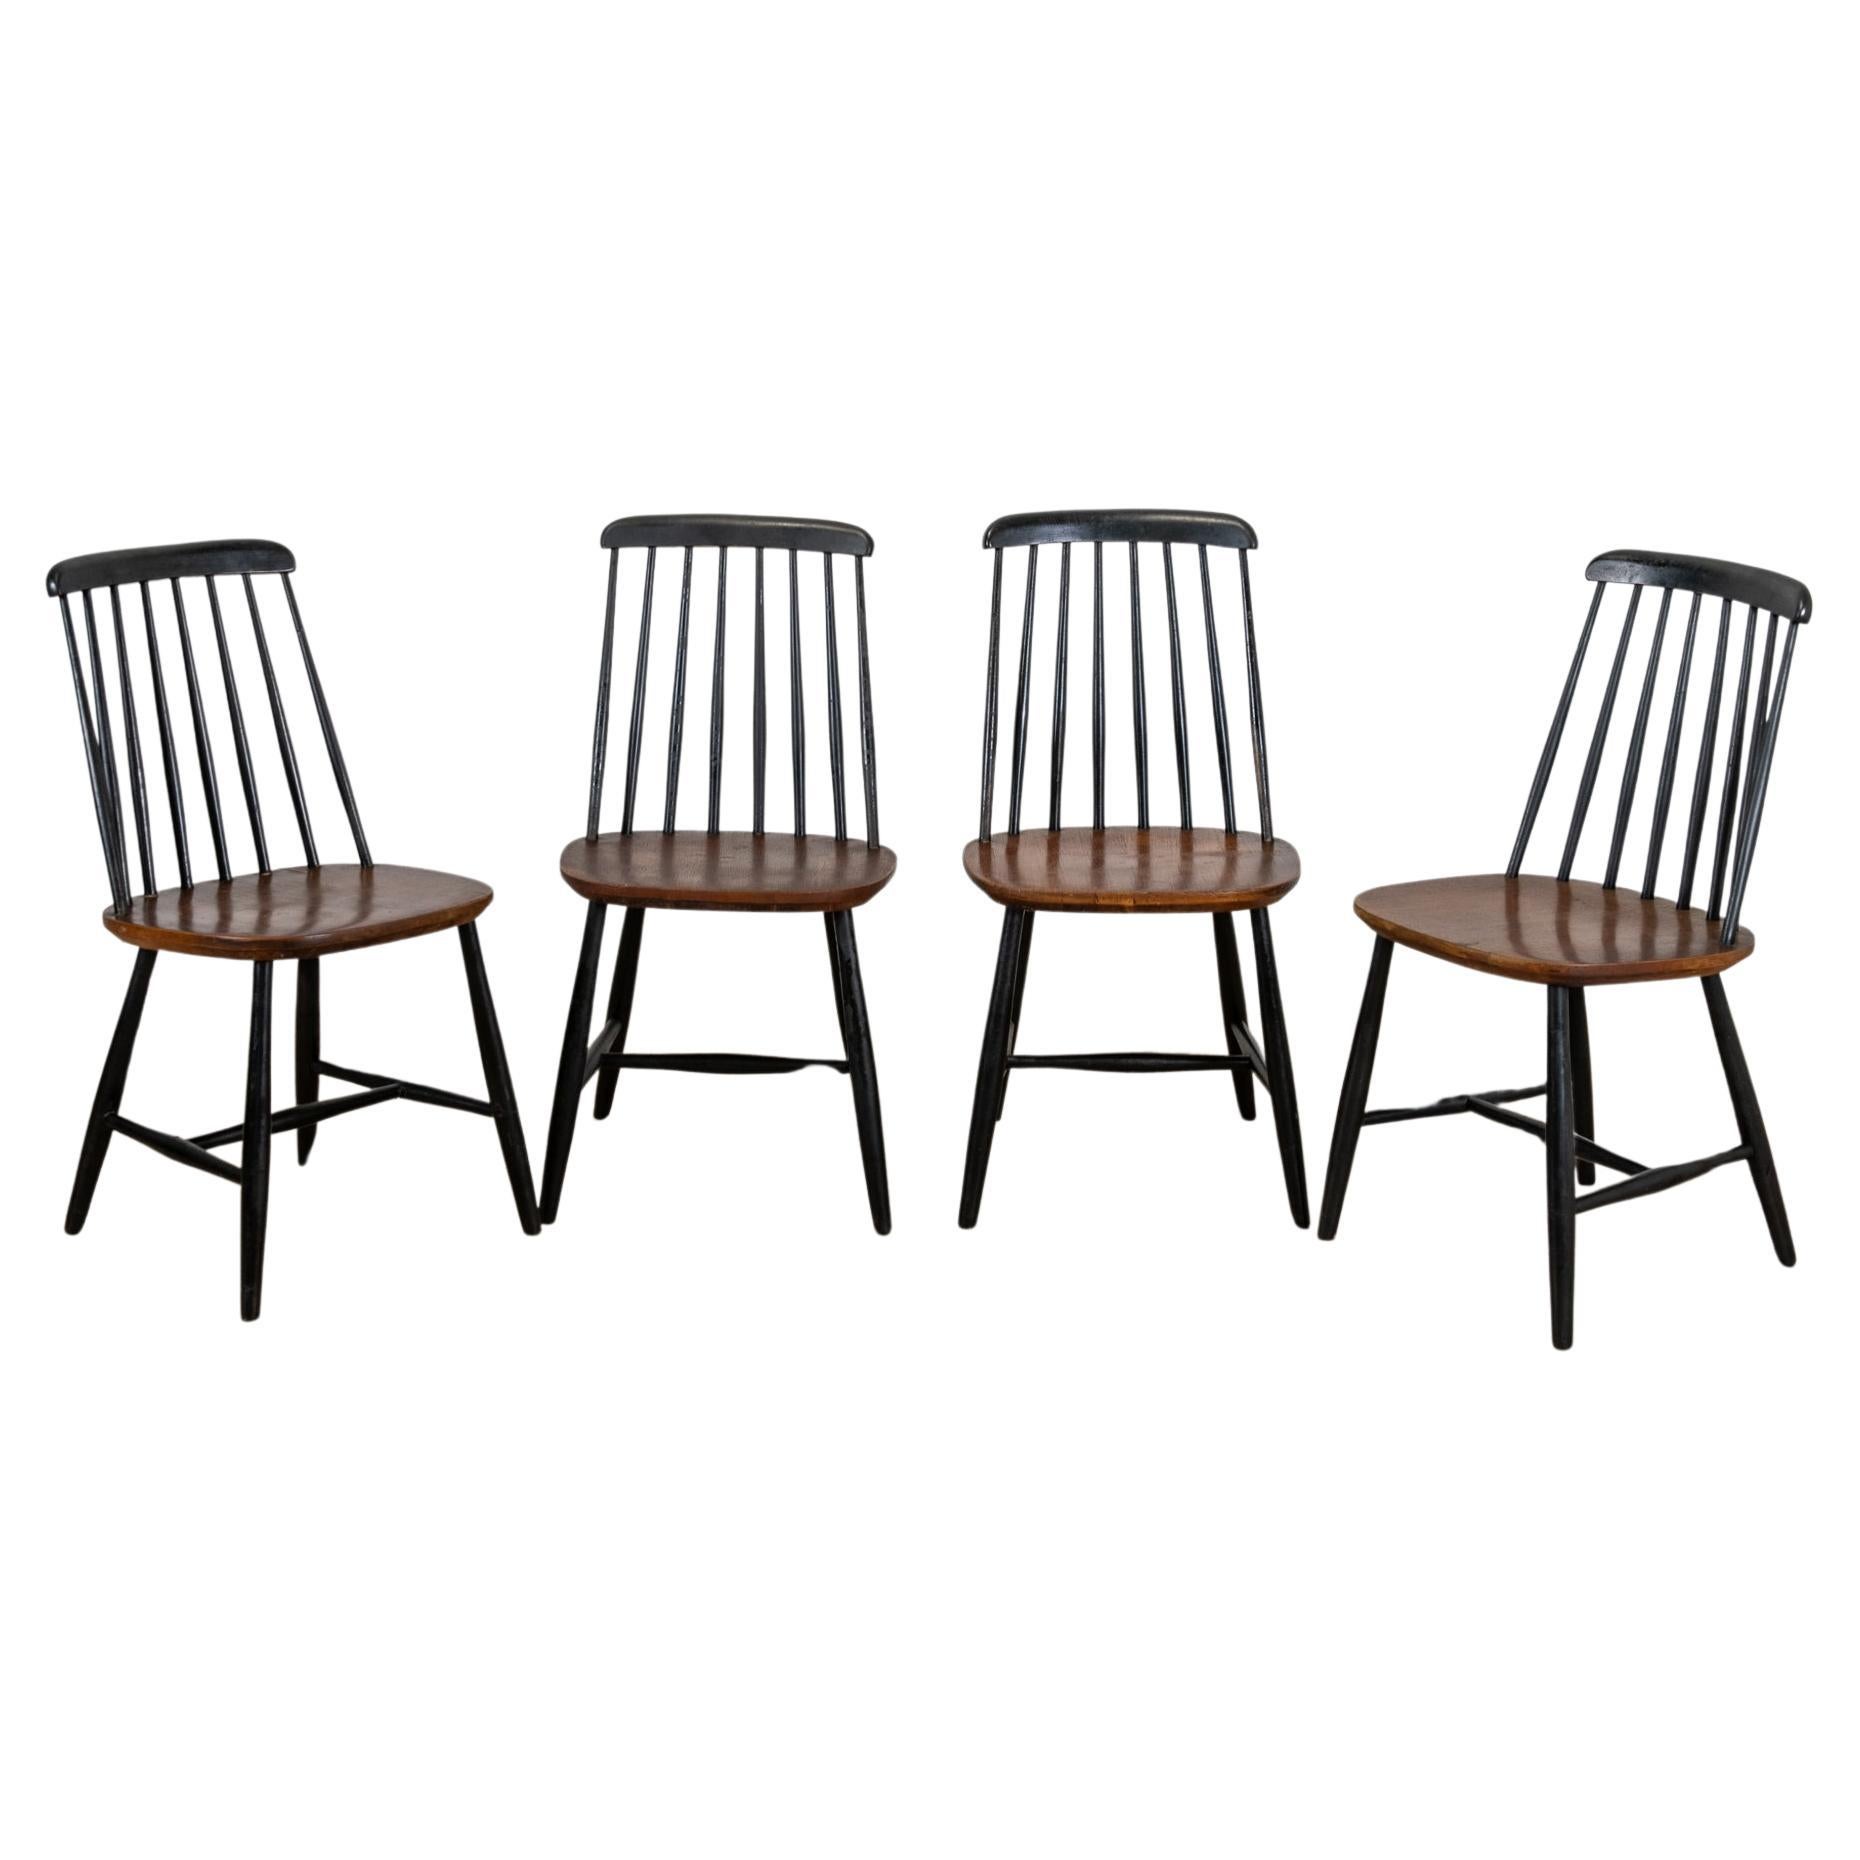 Serie de 4 chaises "Fanette" d'Ilmarie Tapiovaara pour Nässjö Stolfabrik